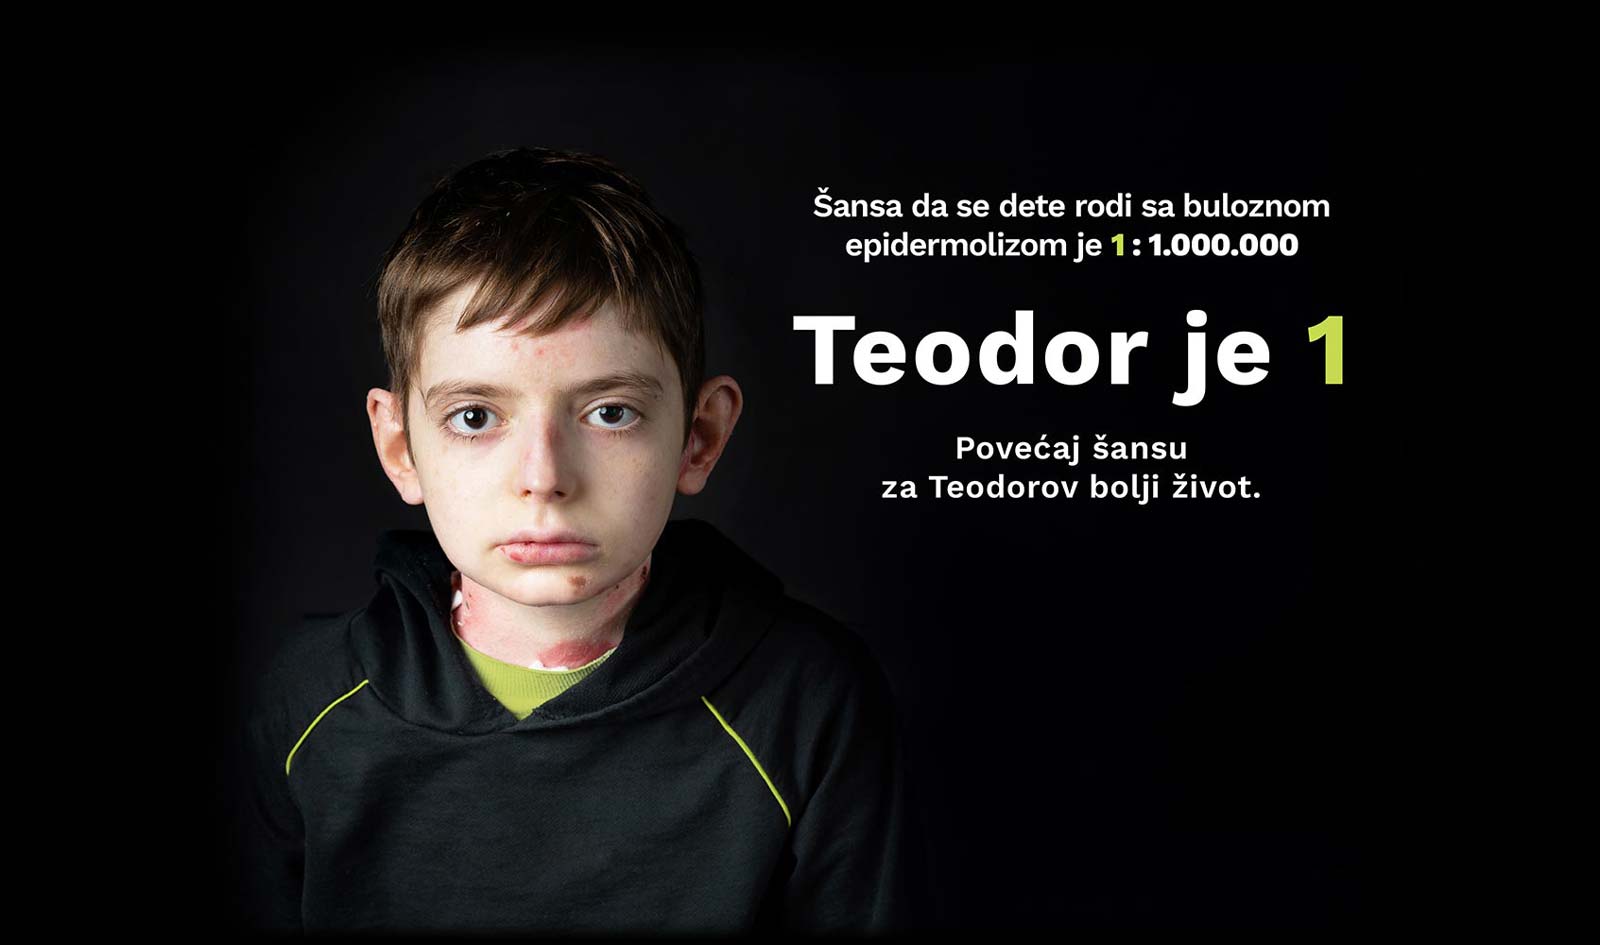 Teodor je 1